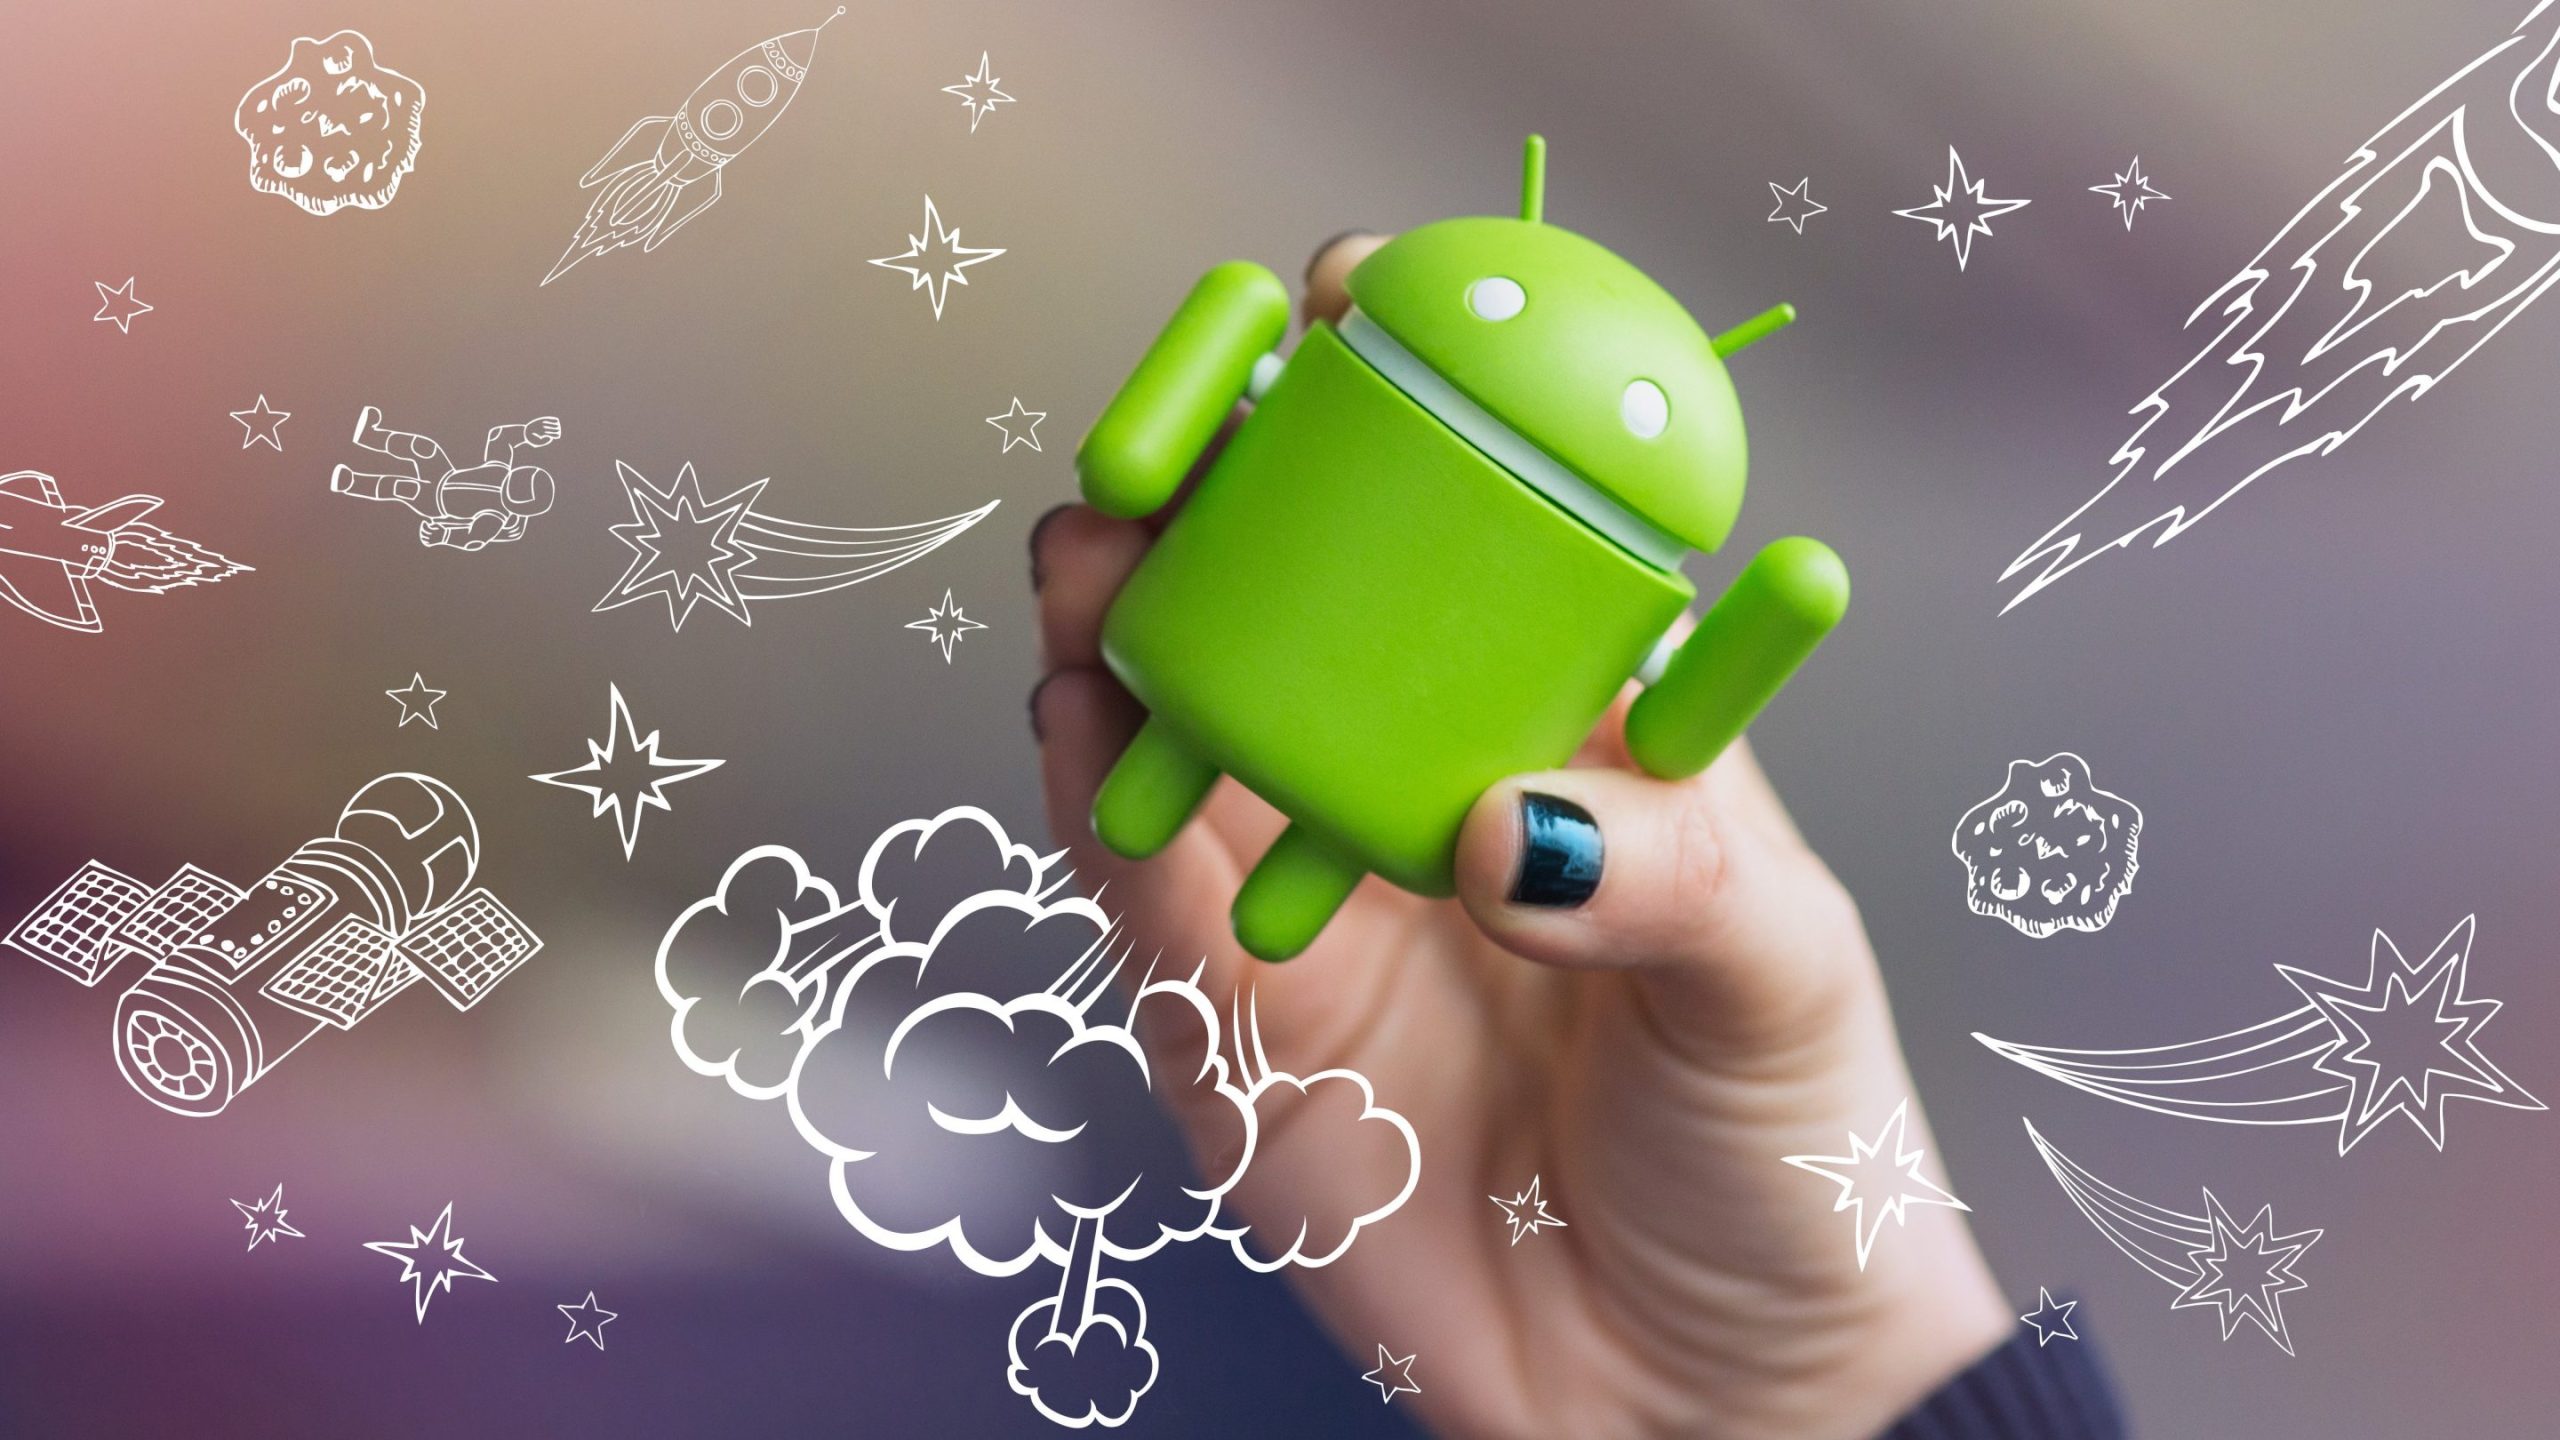 Android Uygulamaların Otomatik Başlaması Nasıl Engellenir?